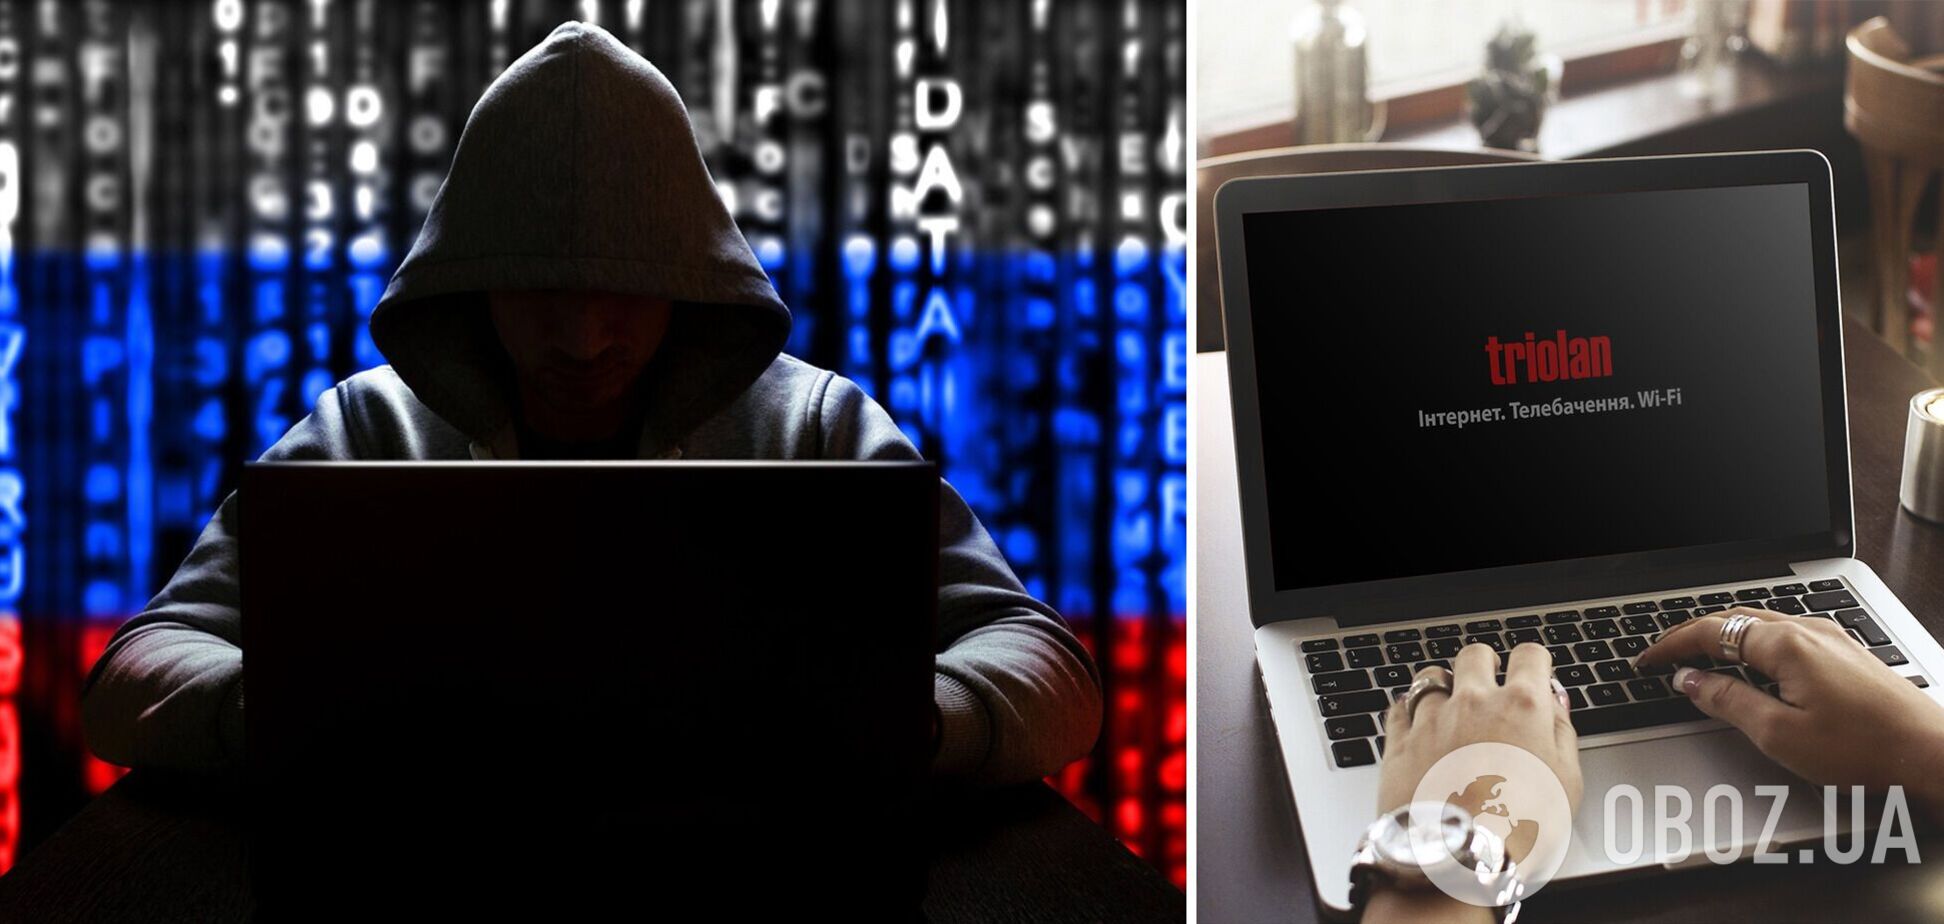 Інтернет-провайдер Triolan заявив, що зазнав хакерської атаки з боку РФ